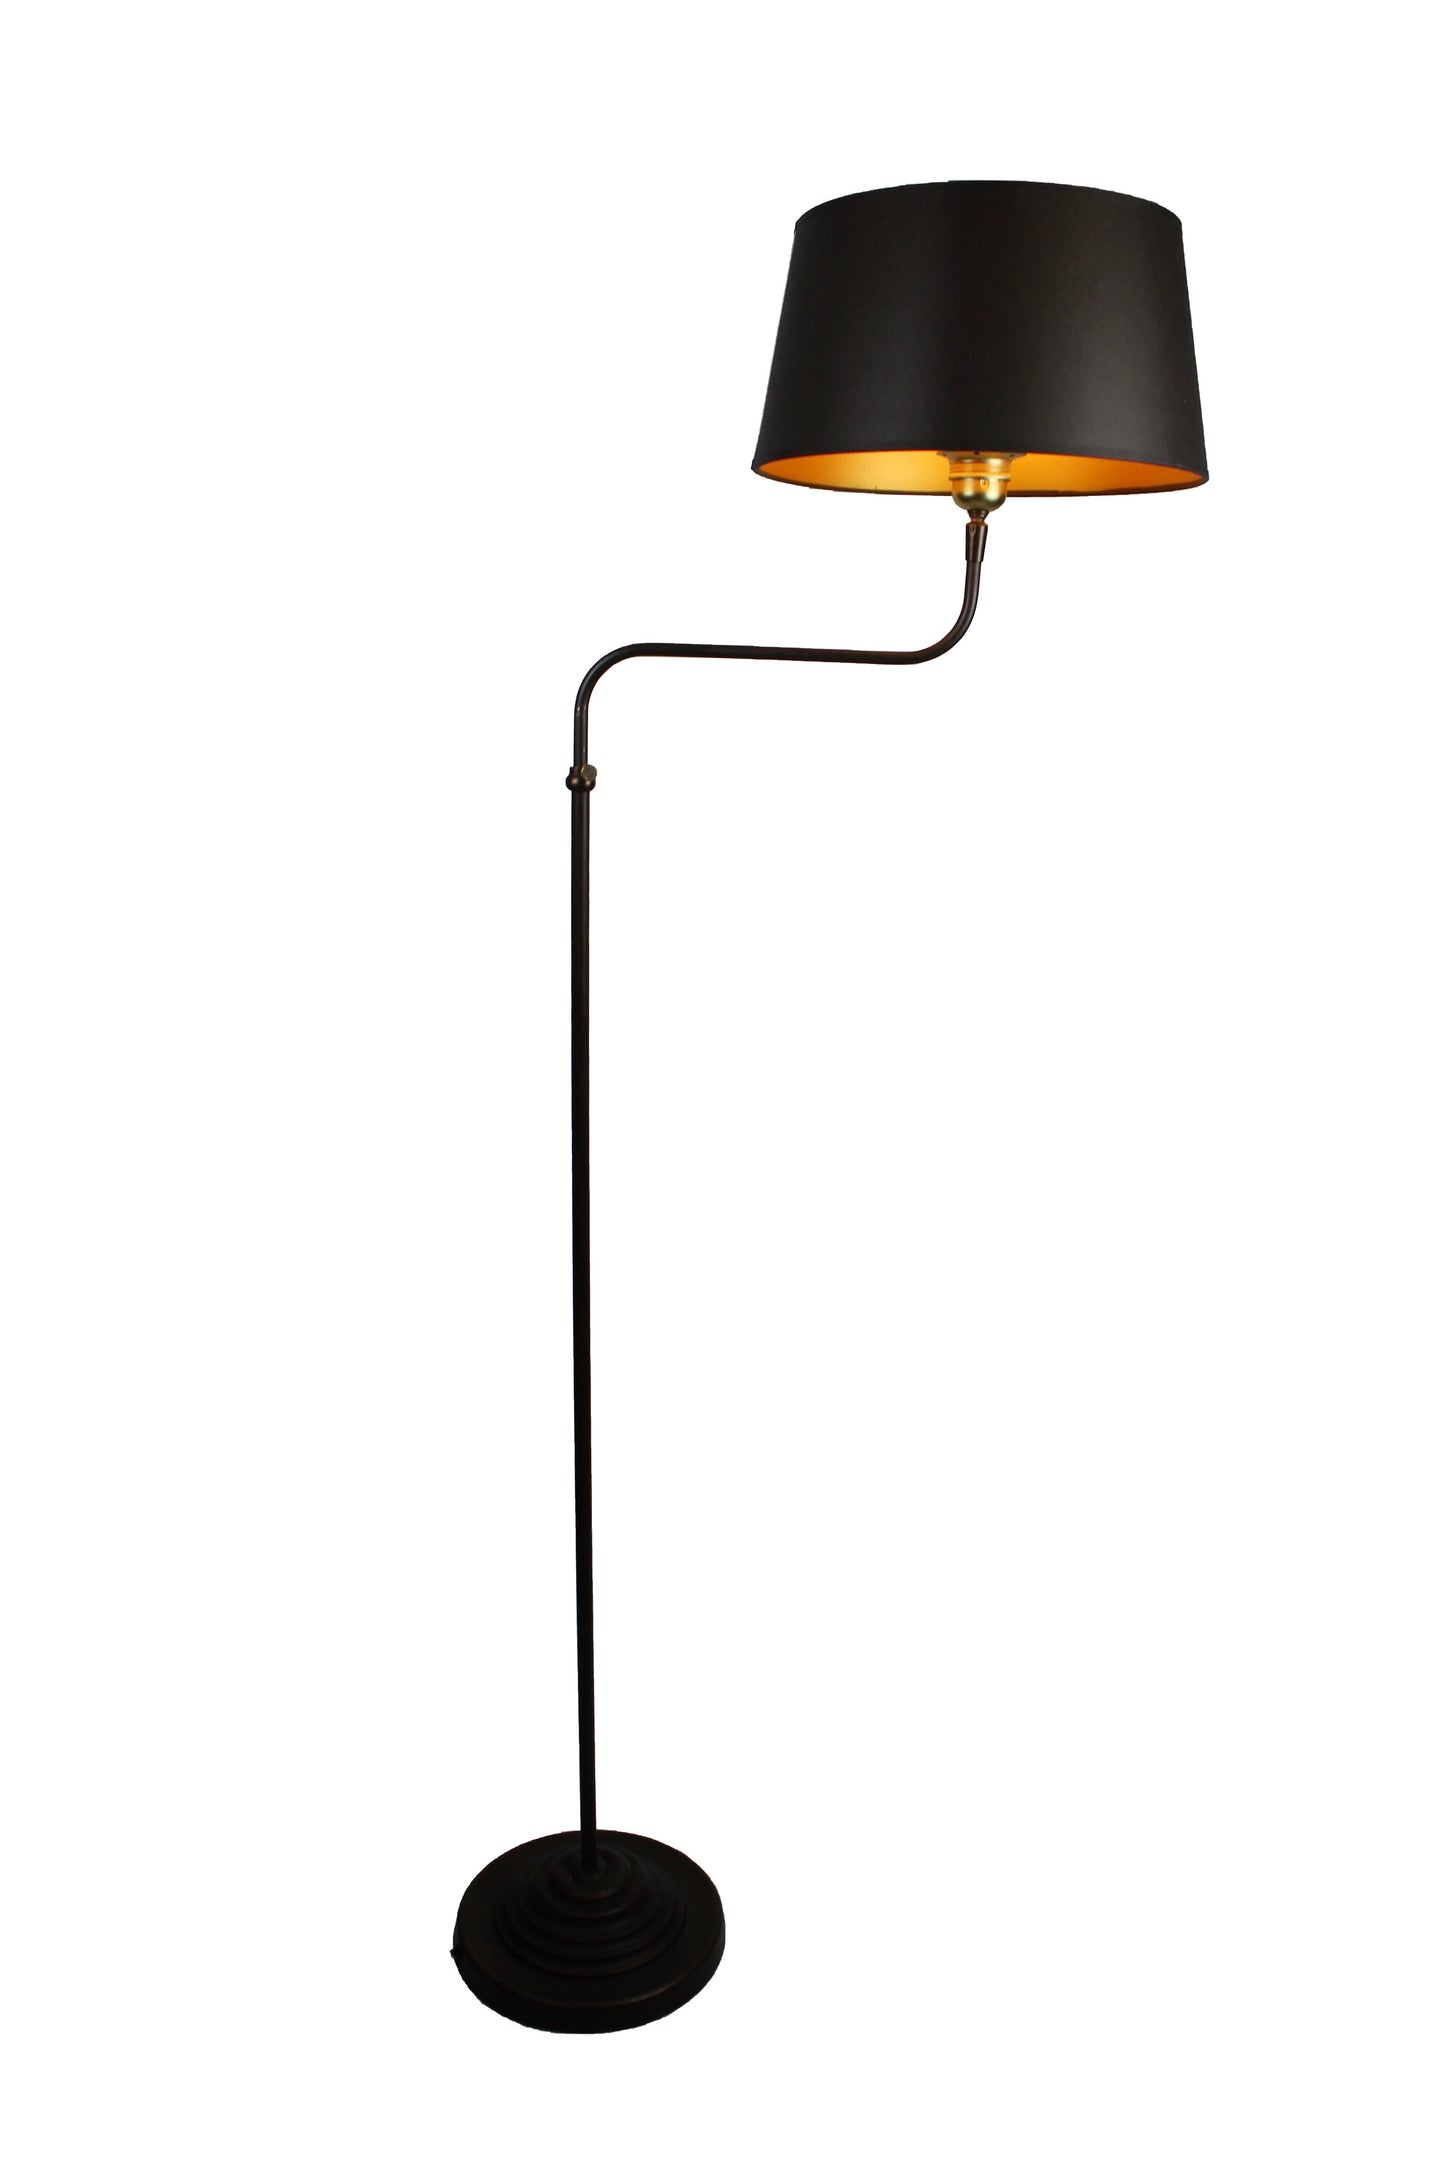 Stehlampe aus Eisen dunkelbraun mit schwarzem Schirm innen gold